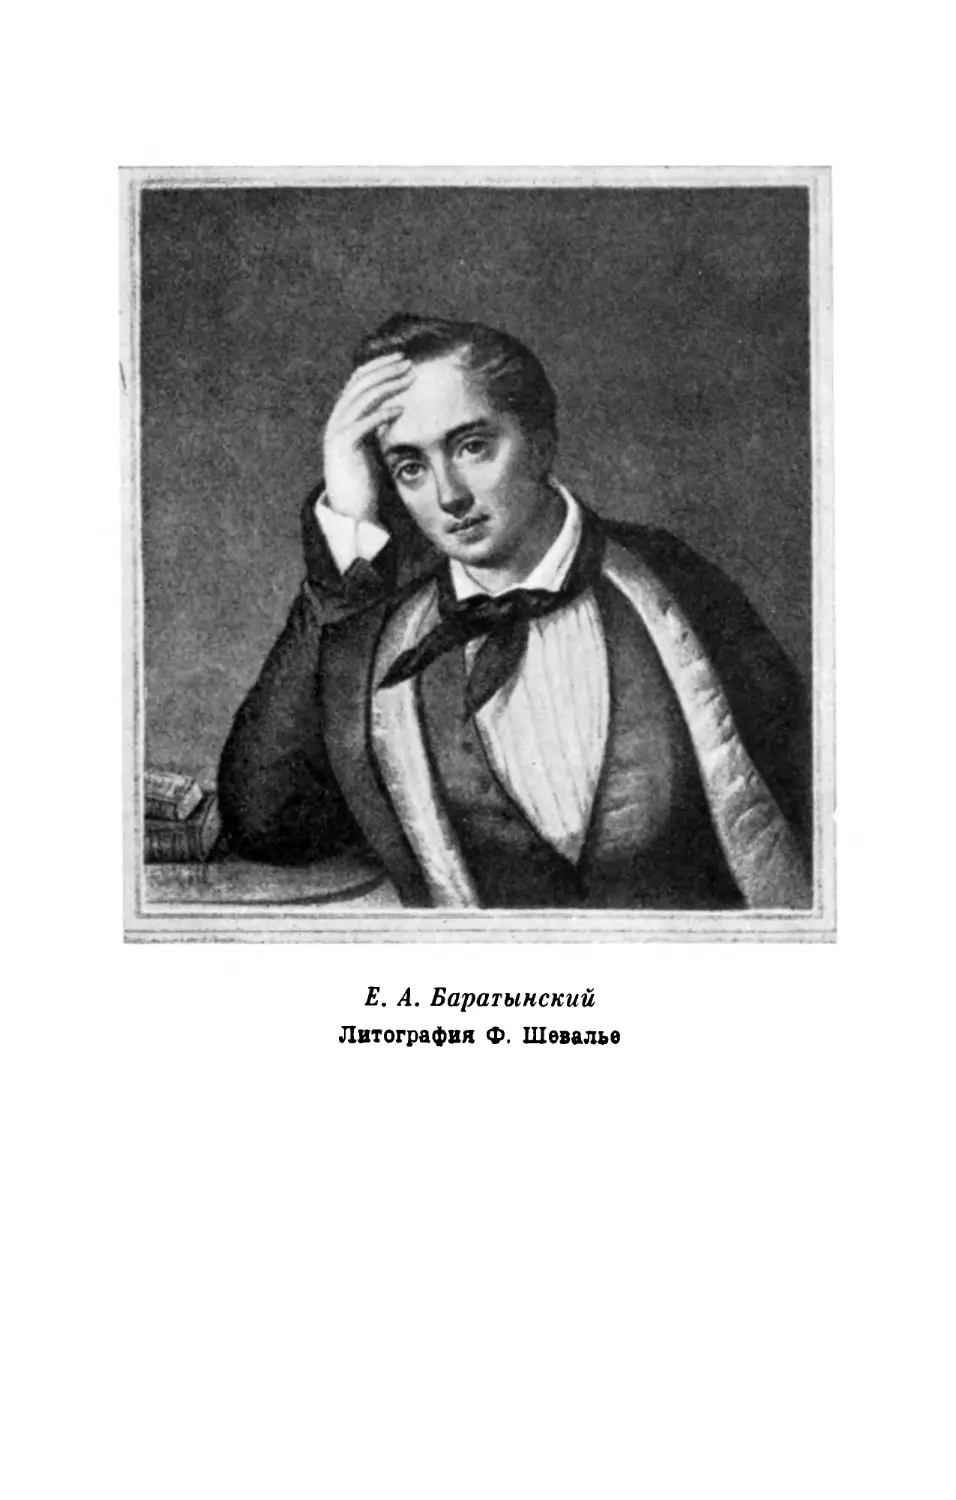 Е.А. Баратынский. Литография Ф. Шевалье